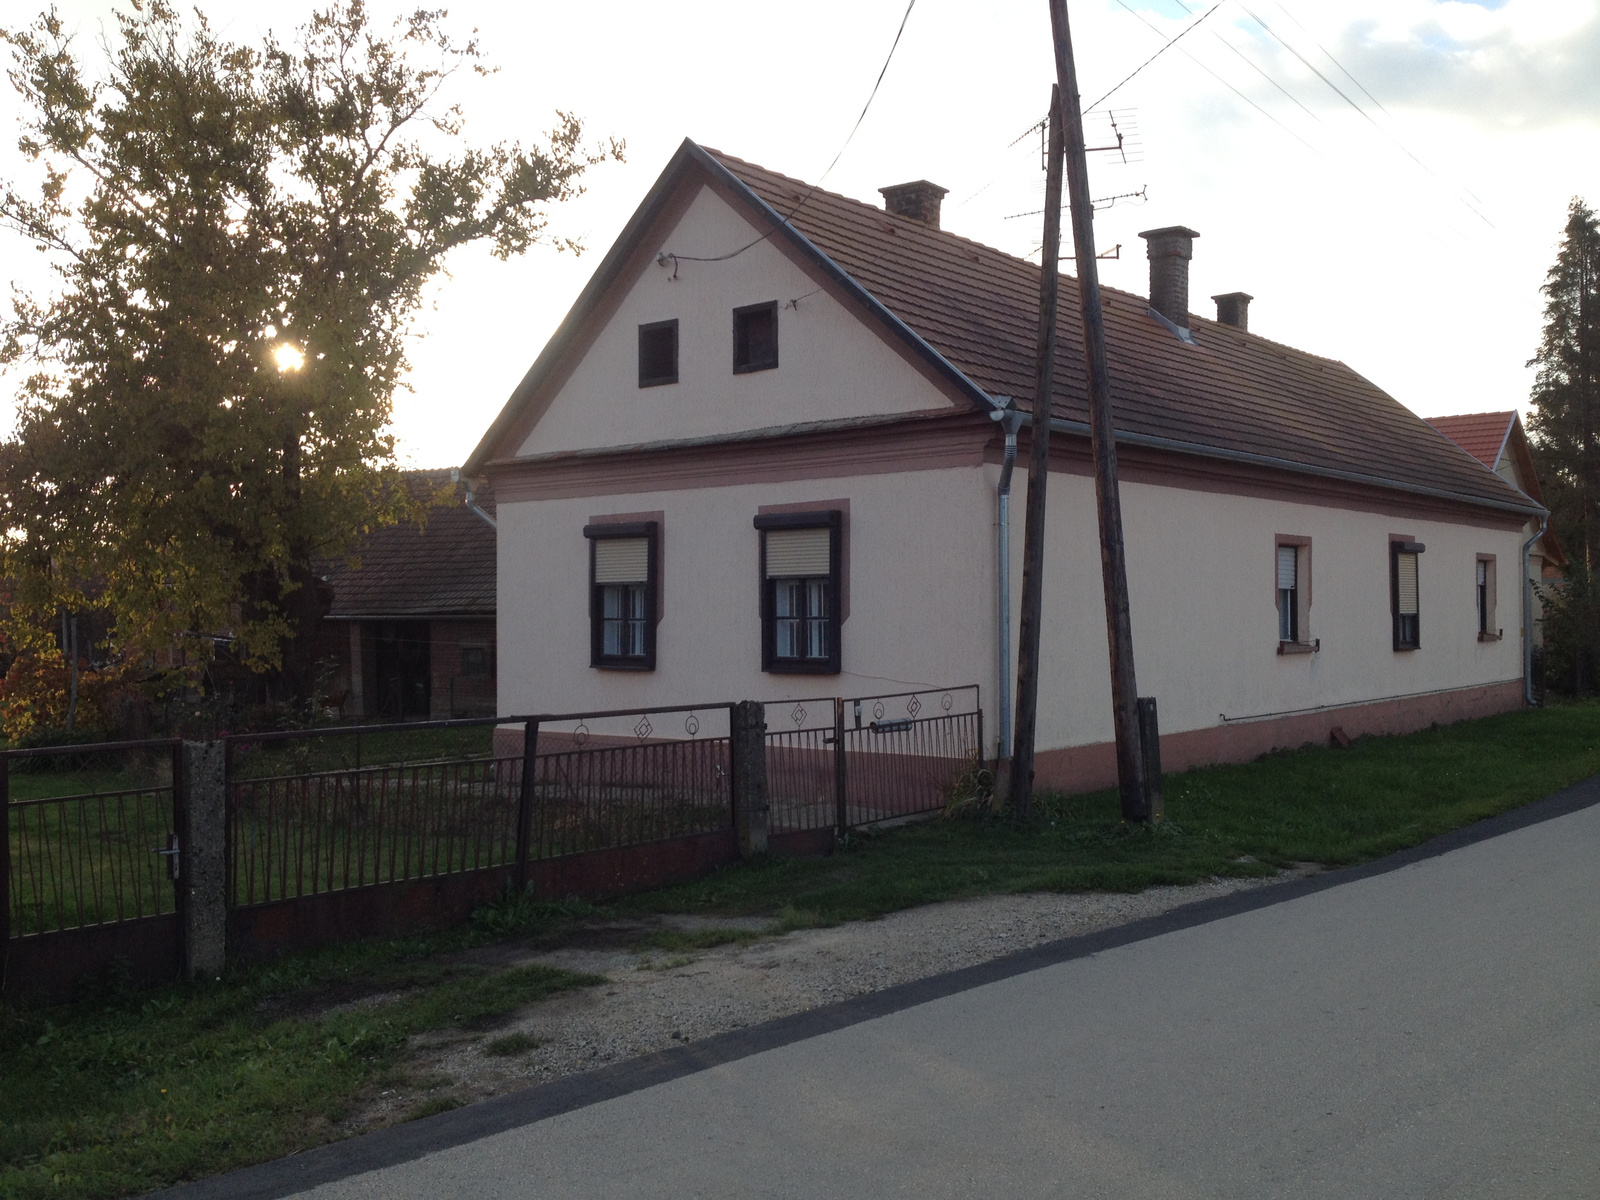 IMG 0421 Bajánsenyei házak -Őrbajánháza (2016-10-30)